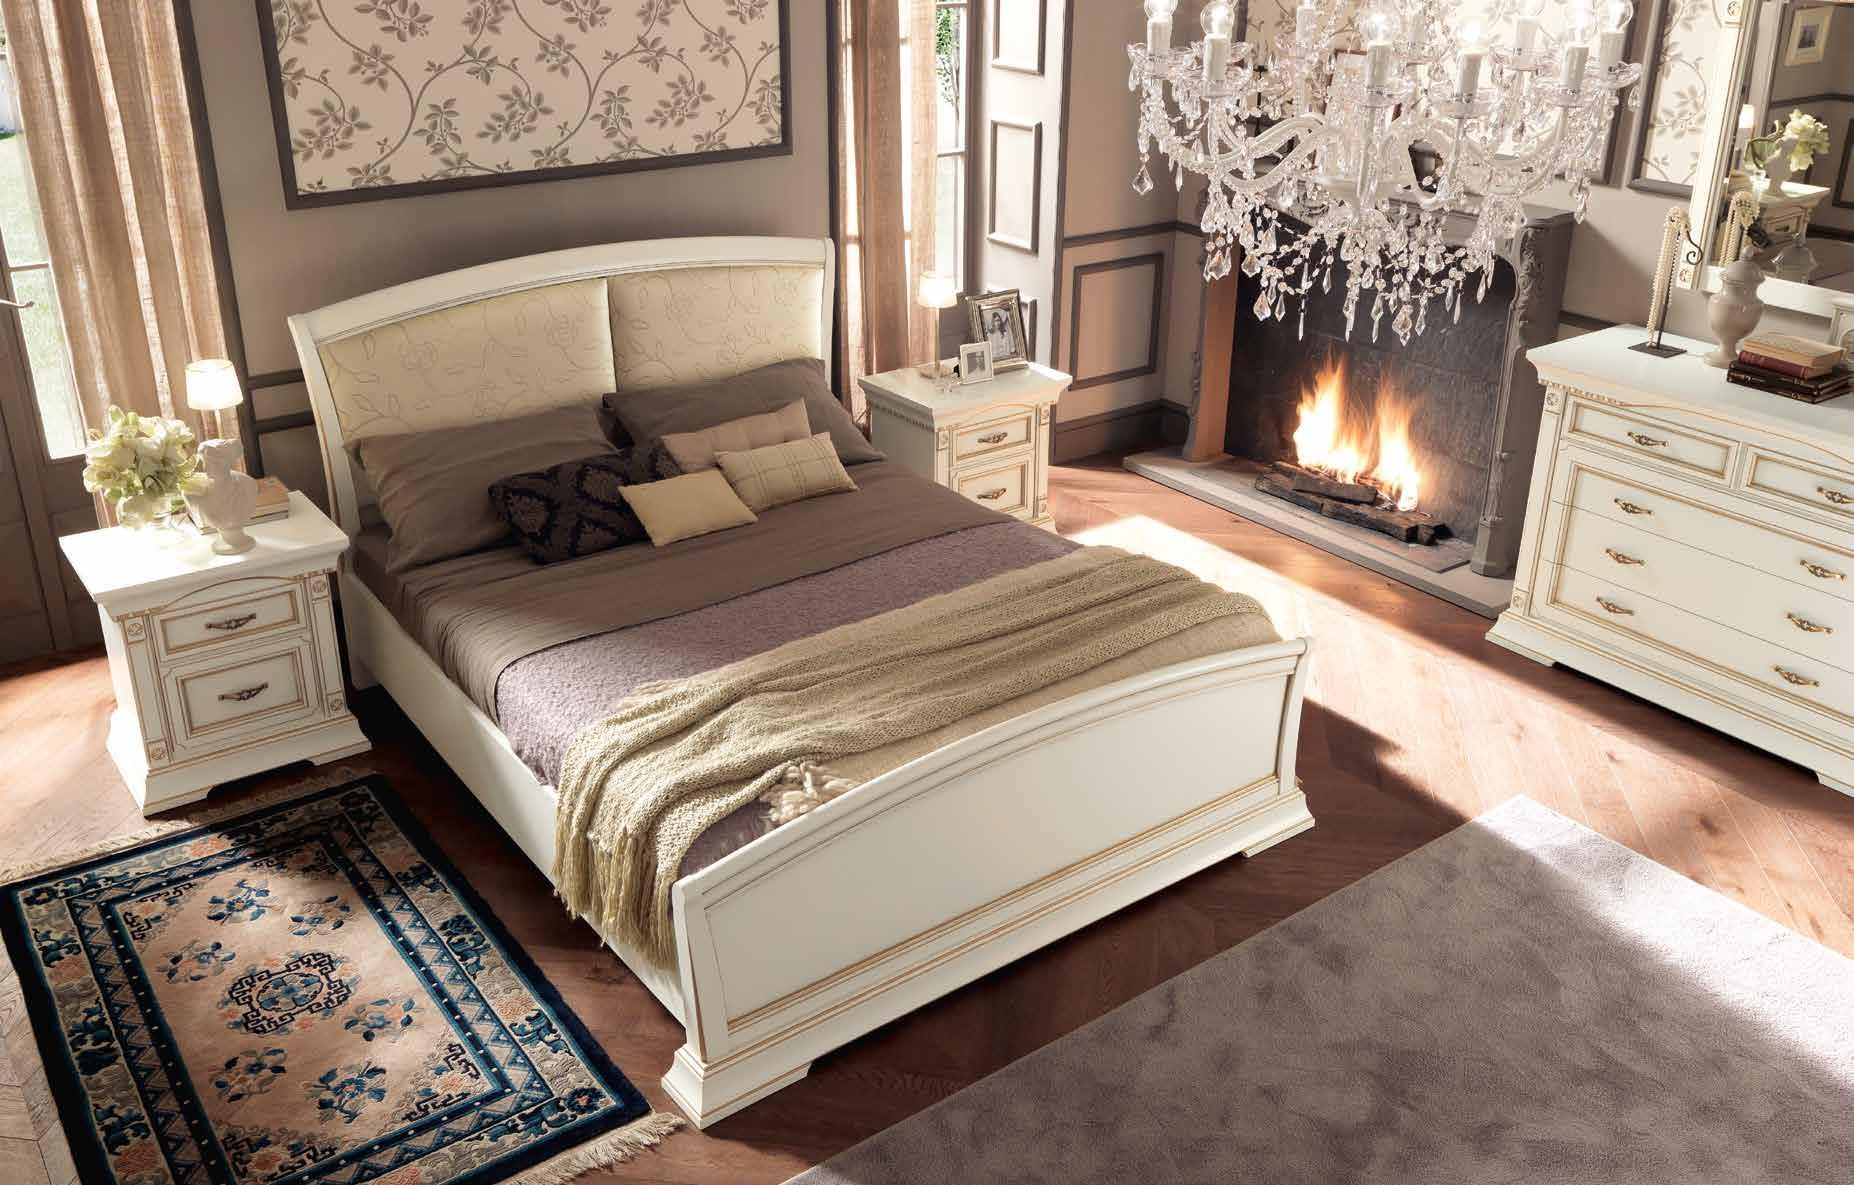 Кровать Prama Palazzo Ducale laccato, полуторная, с мягким изголовьем и изножьем, цвет: белый с золотом, экокожа, 140x200 см (71BO13LT)71BO13LT